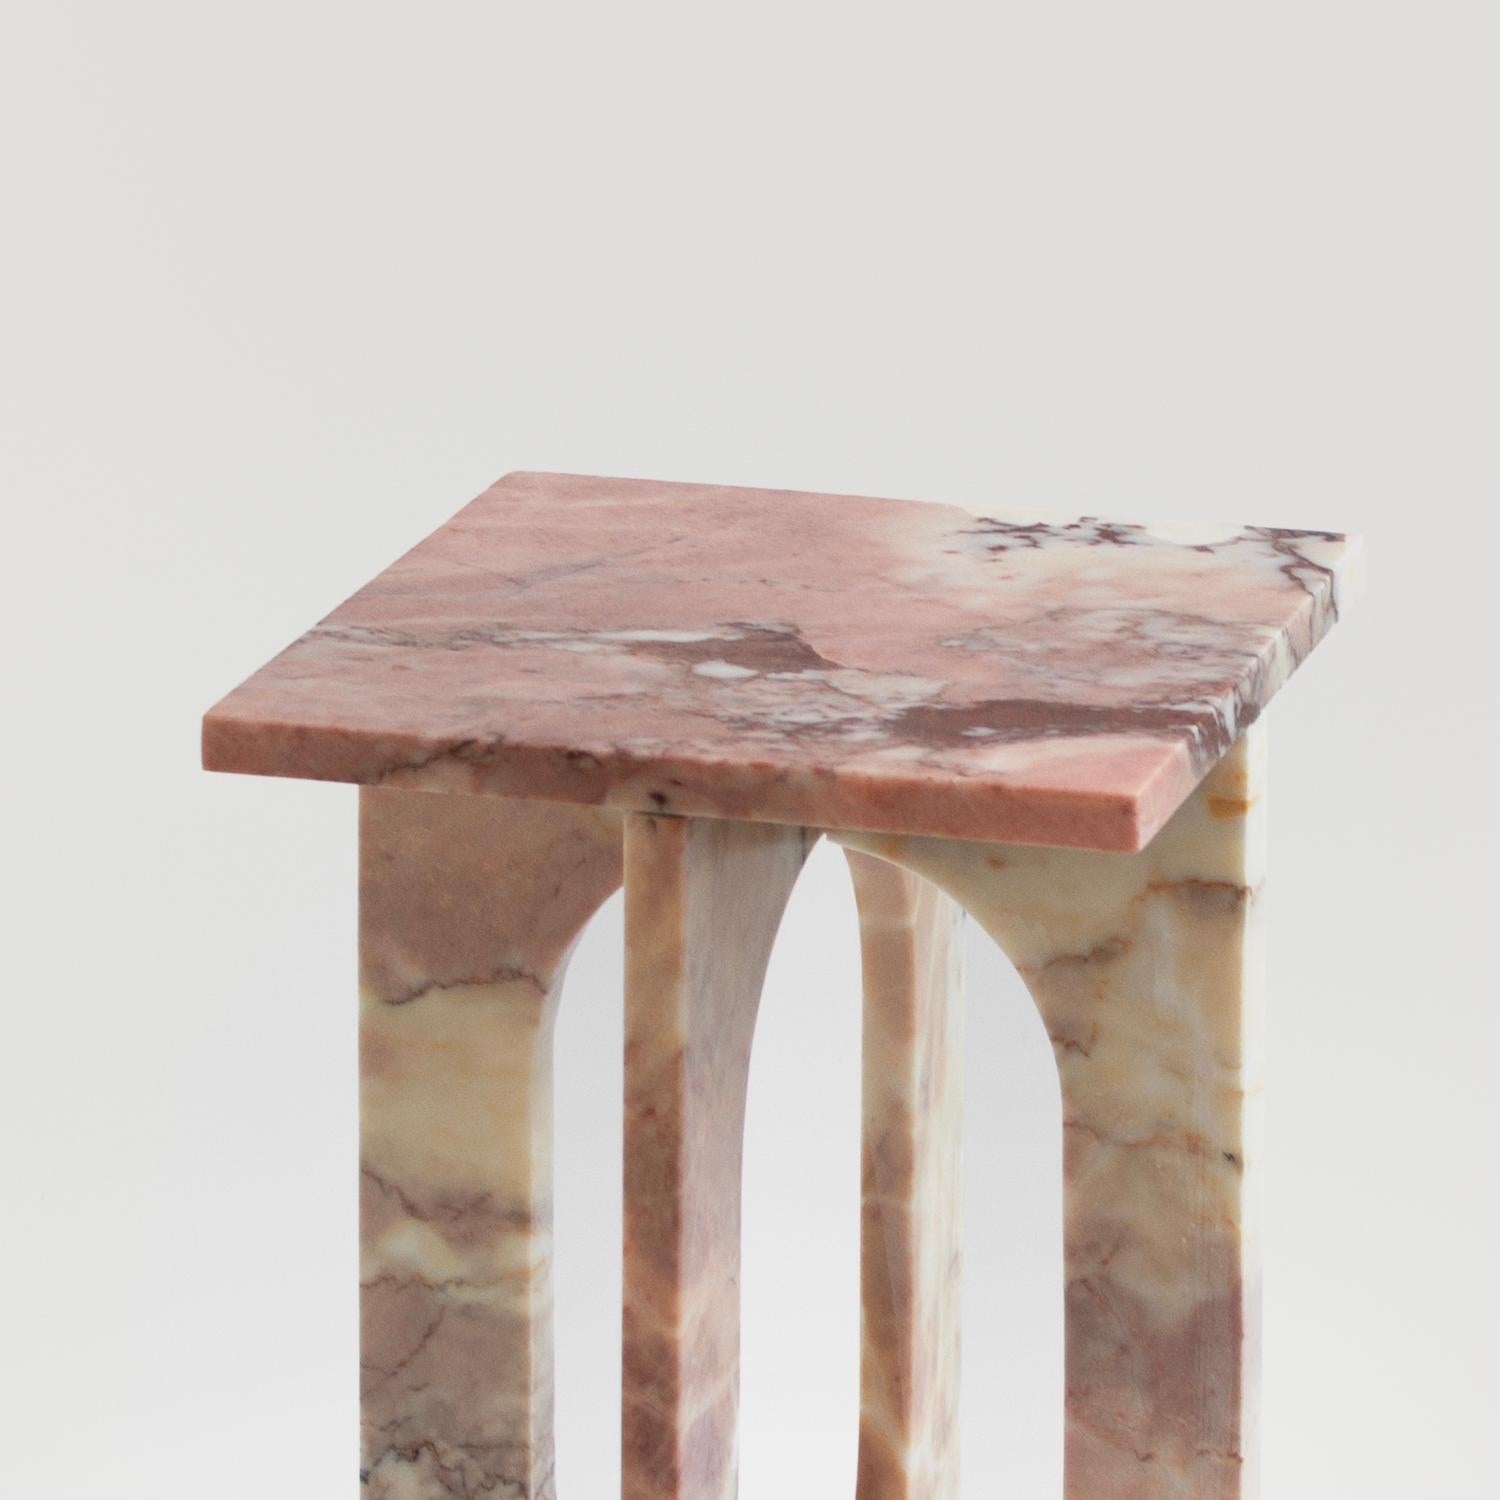 Table d'appoint BOND en marbre rose -  La table d'appoint Bond évoque la simplicité avec son design moderne et épuré. Fabriquée en marbre adouci, cette pièce constitue un ajout élégant à tout espace grâce à ses lignes sophistiquées et épurées et à